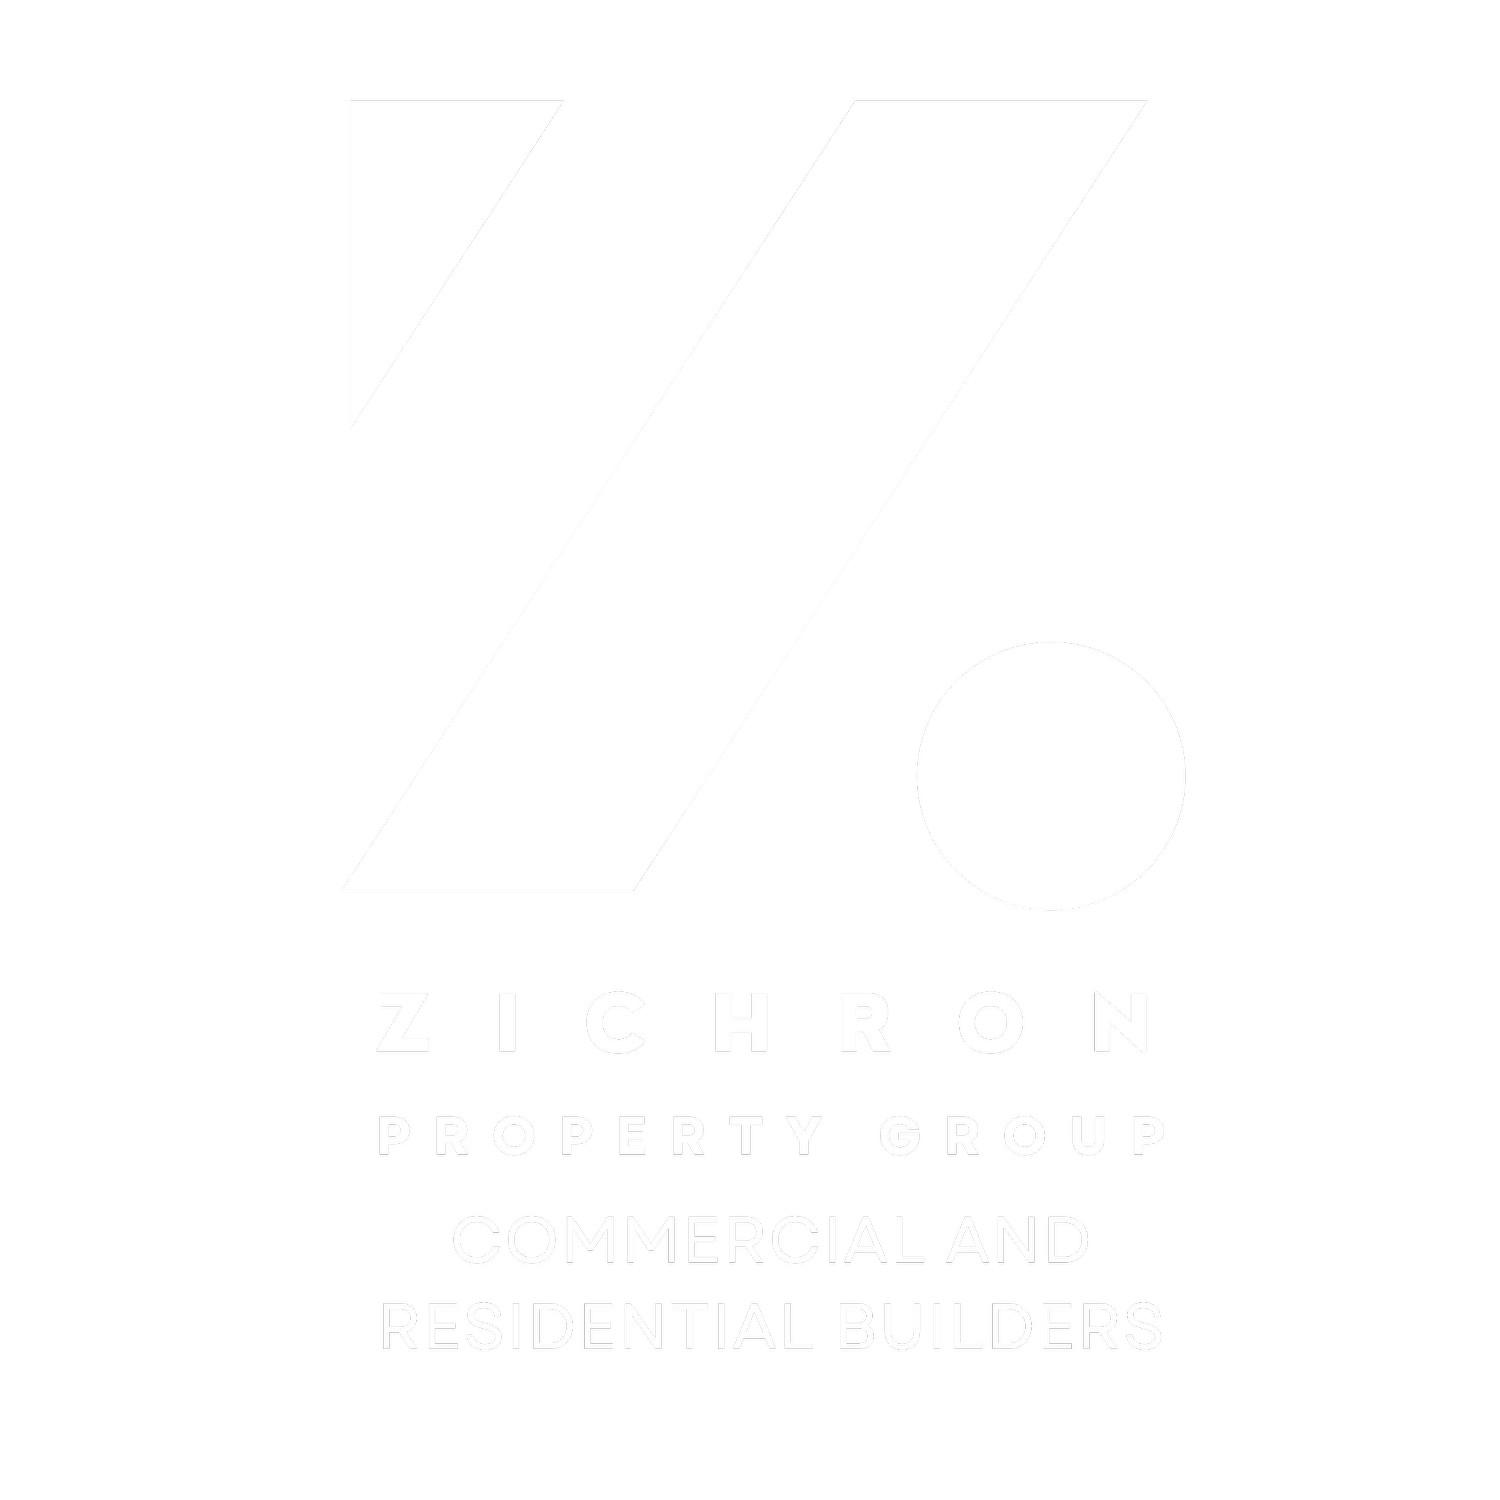 Zichron Property Group